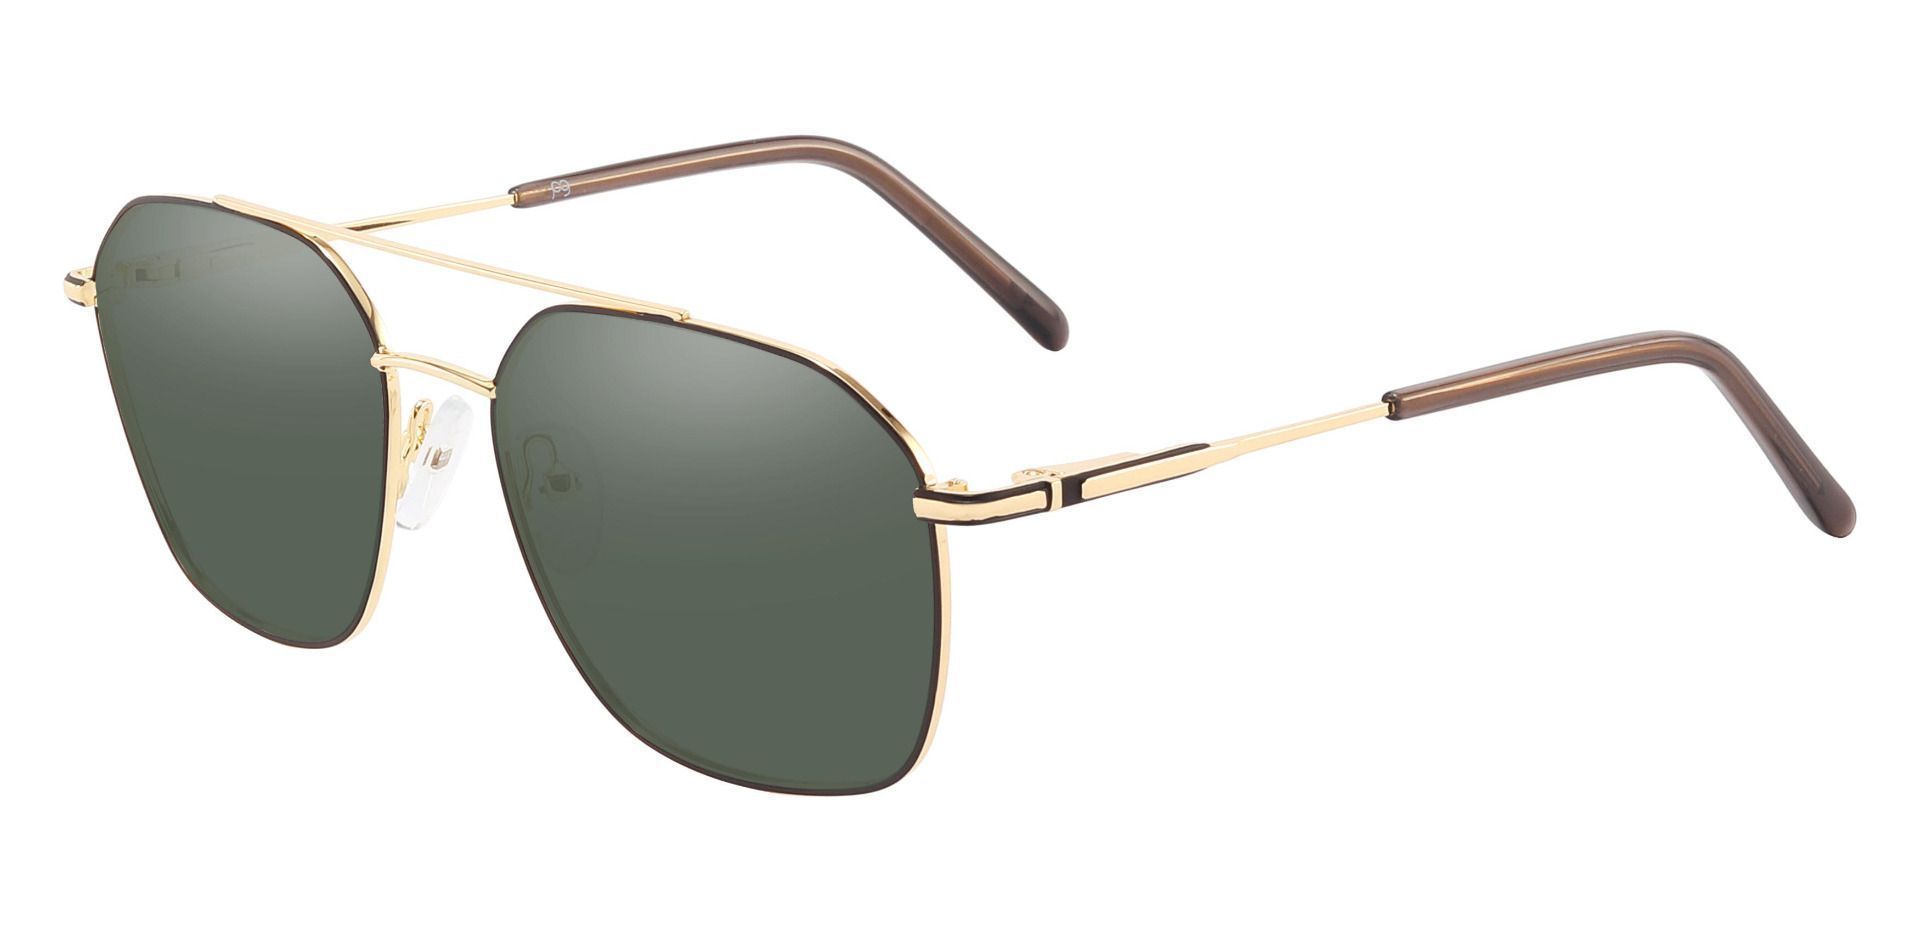 Harvey Aviator Prescription Sunglasses - Gold Frame With Green Lenses